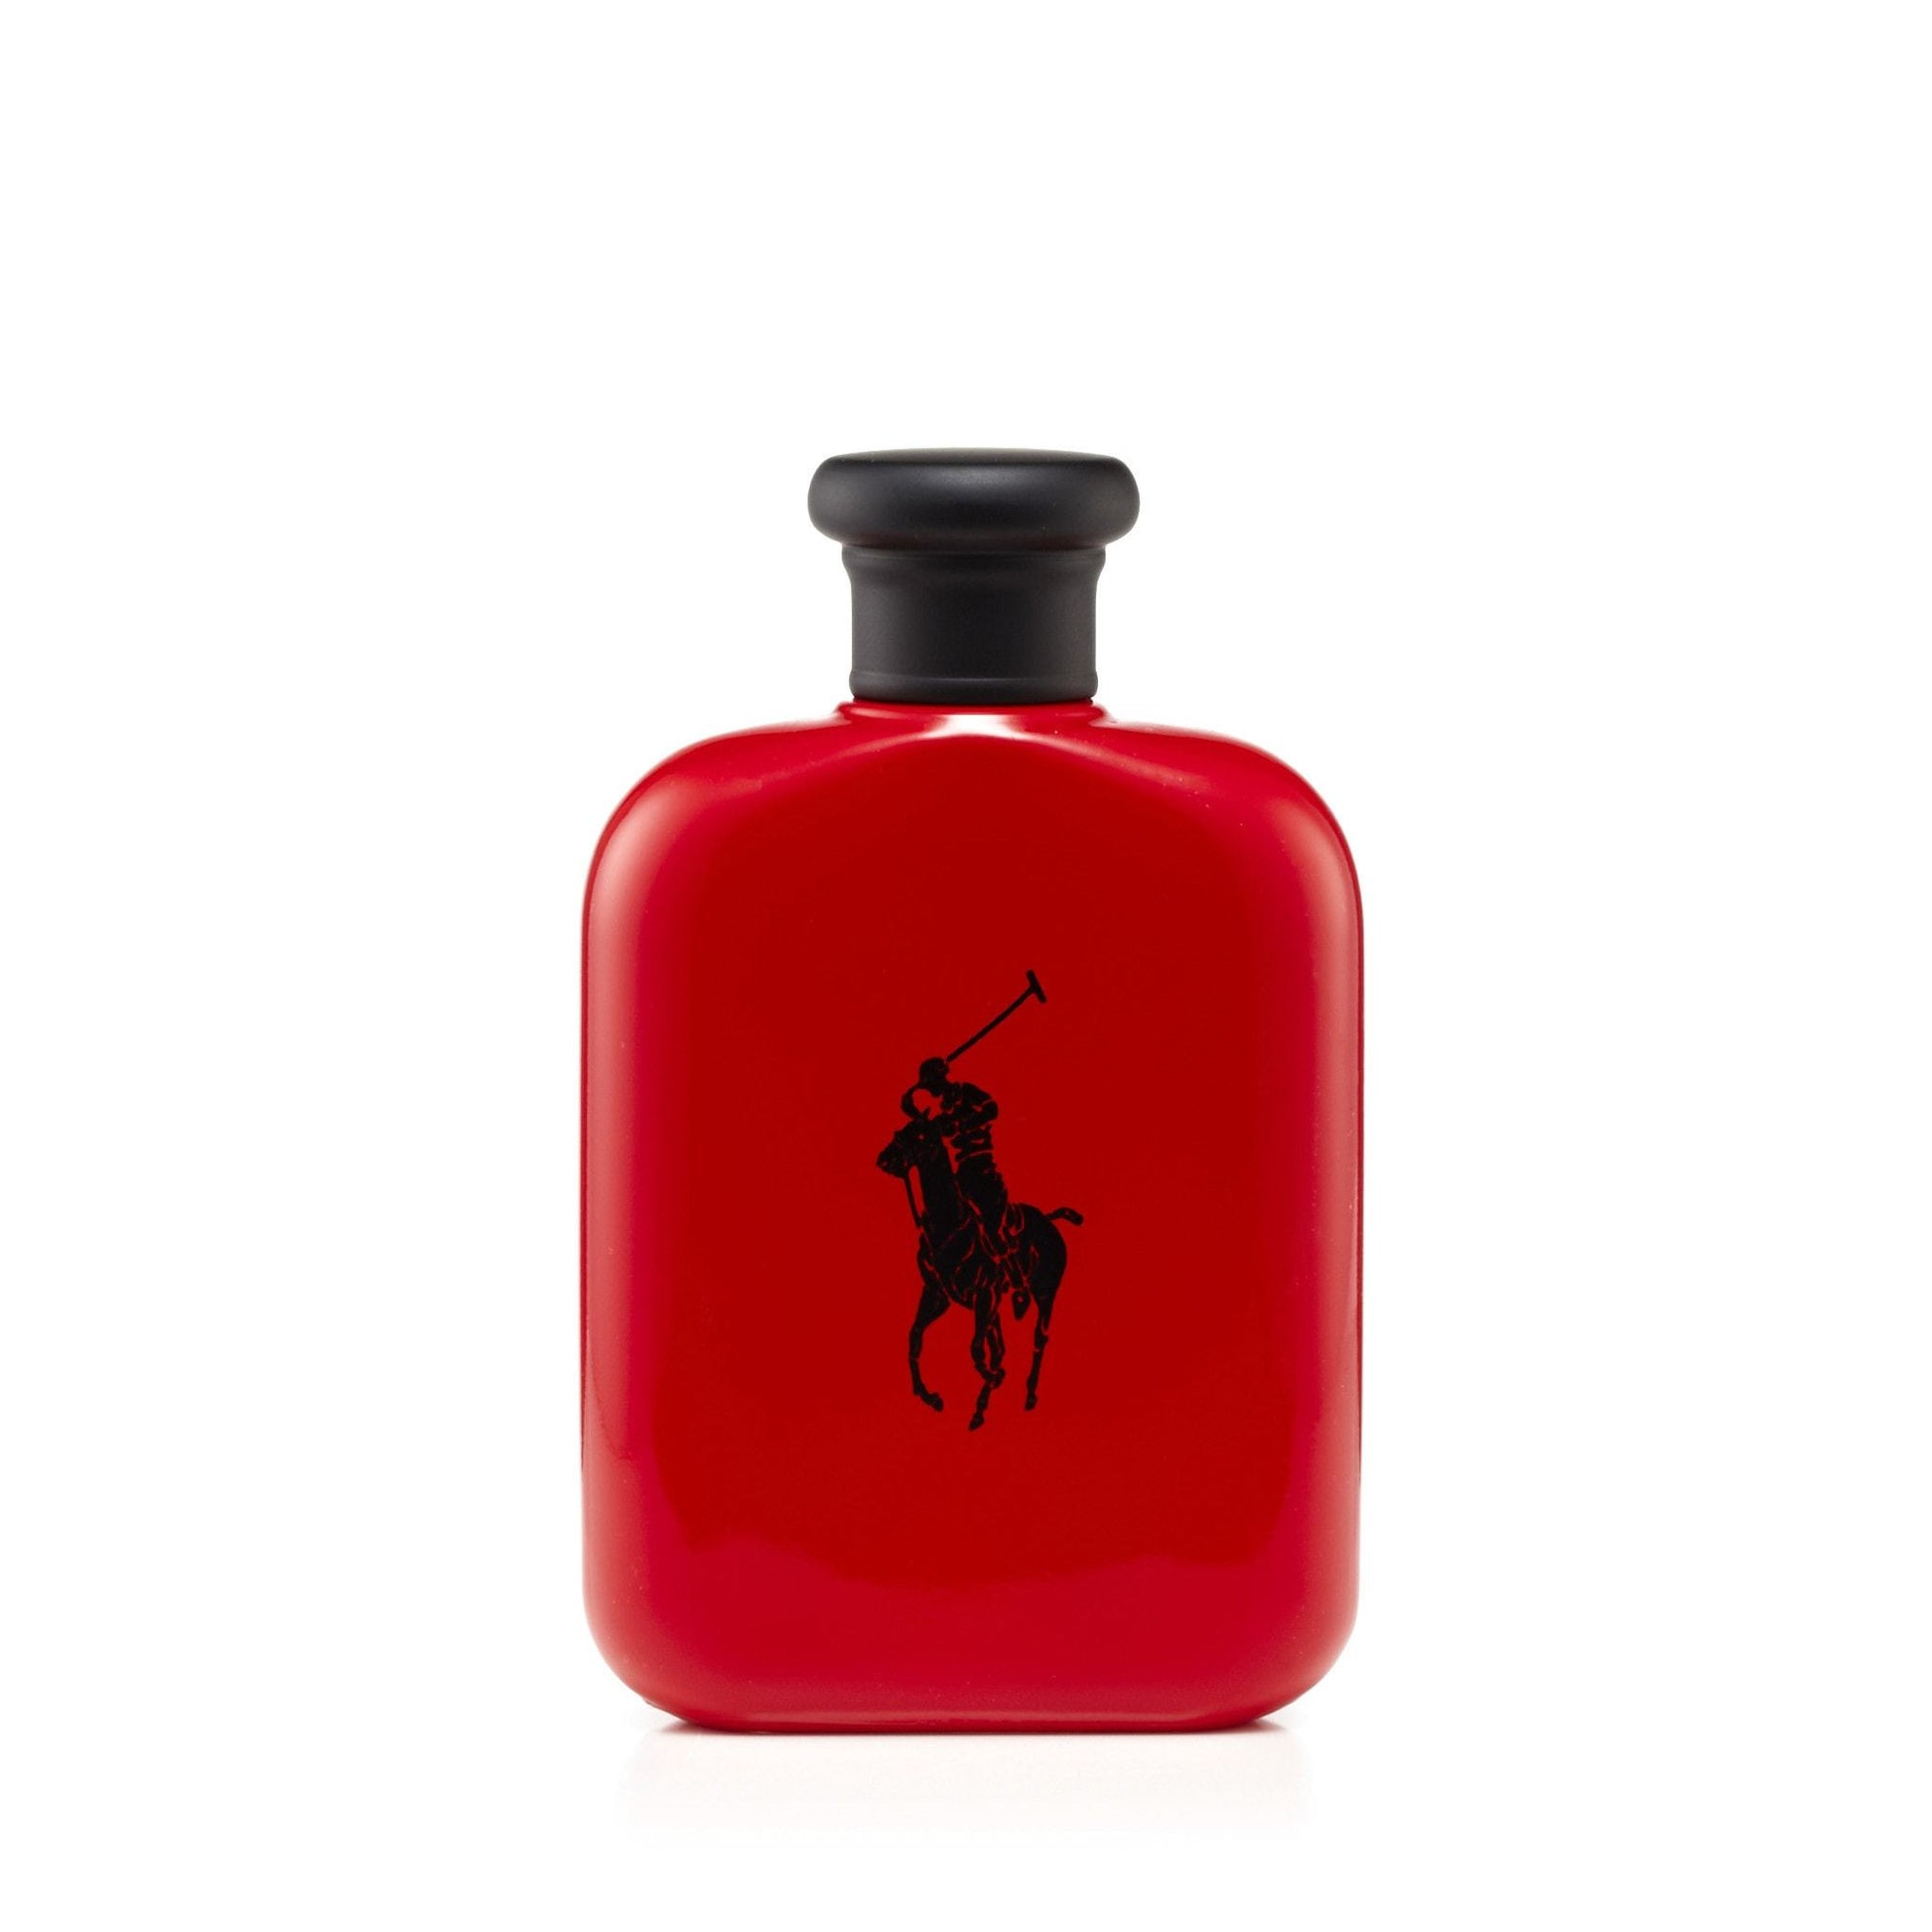 Polo Red Eau de Toilette Spray for Men by Ralph Lauren, Product image 3